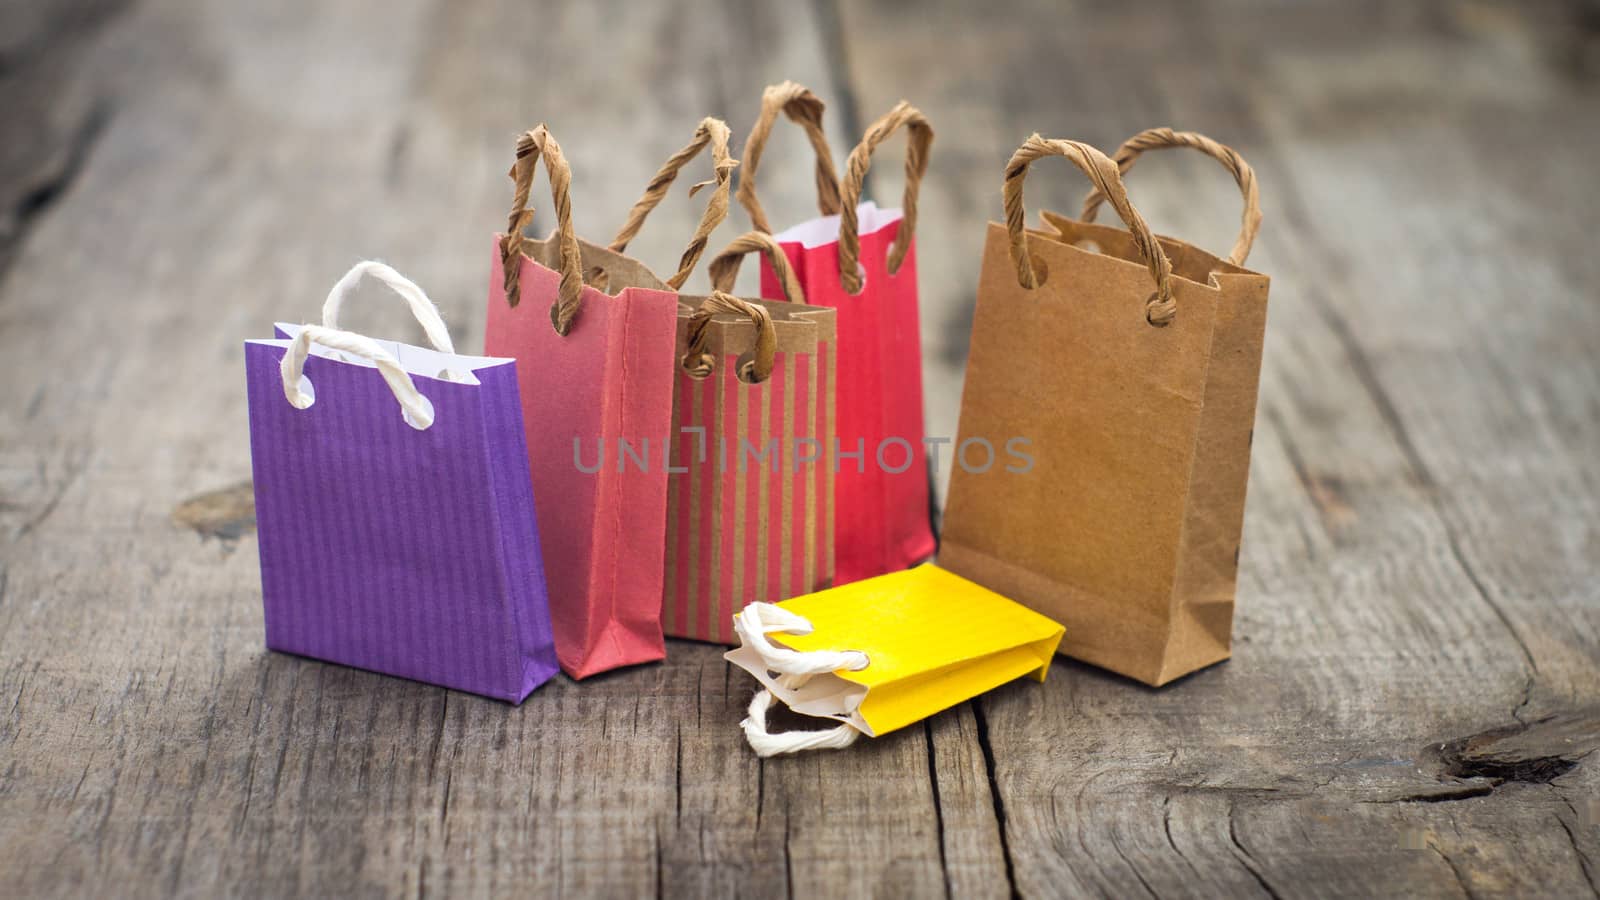 Miniature Shopping Bags by kbuntu